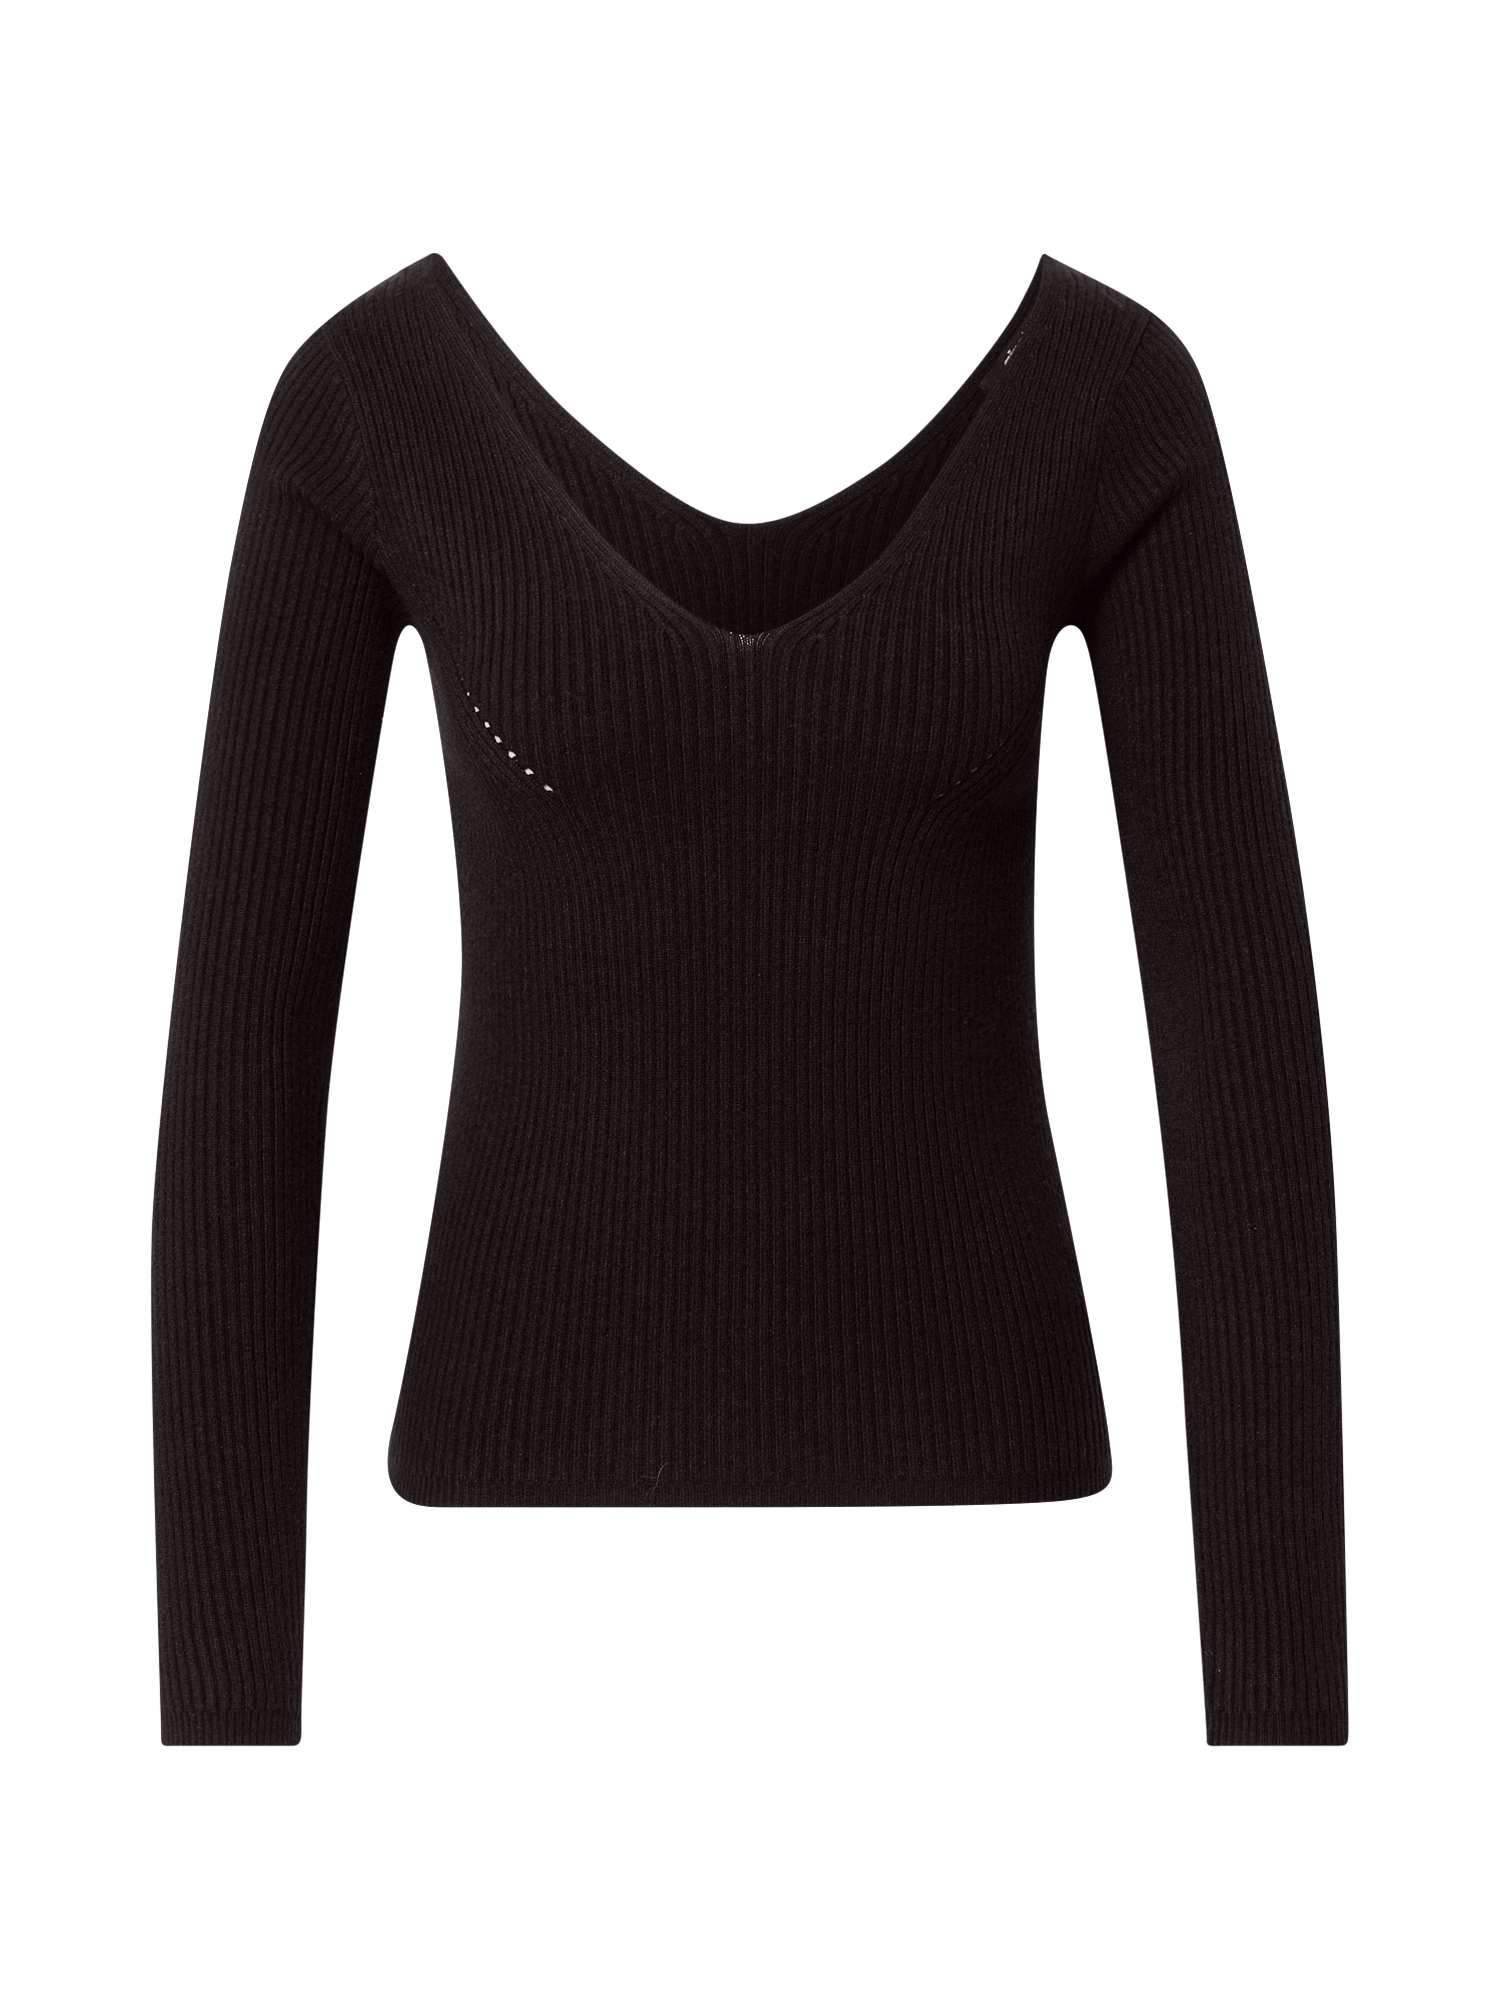 Odzież Kobiety Gina Tricot Sweter Kaitlyn w kolorze Czarnym 